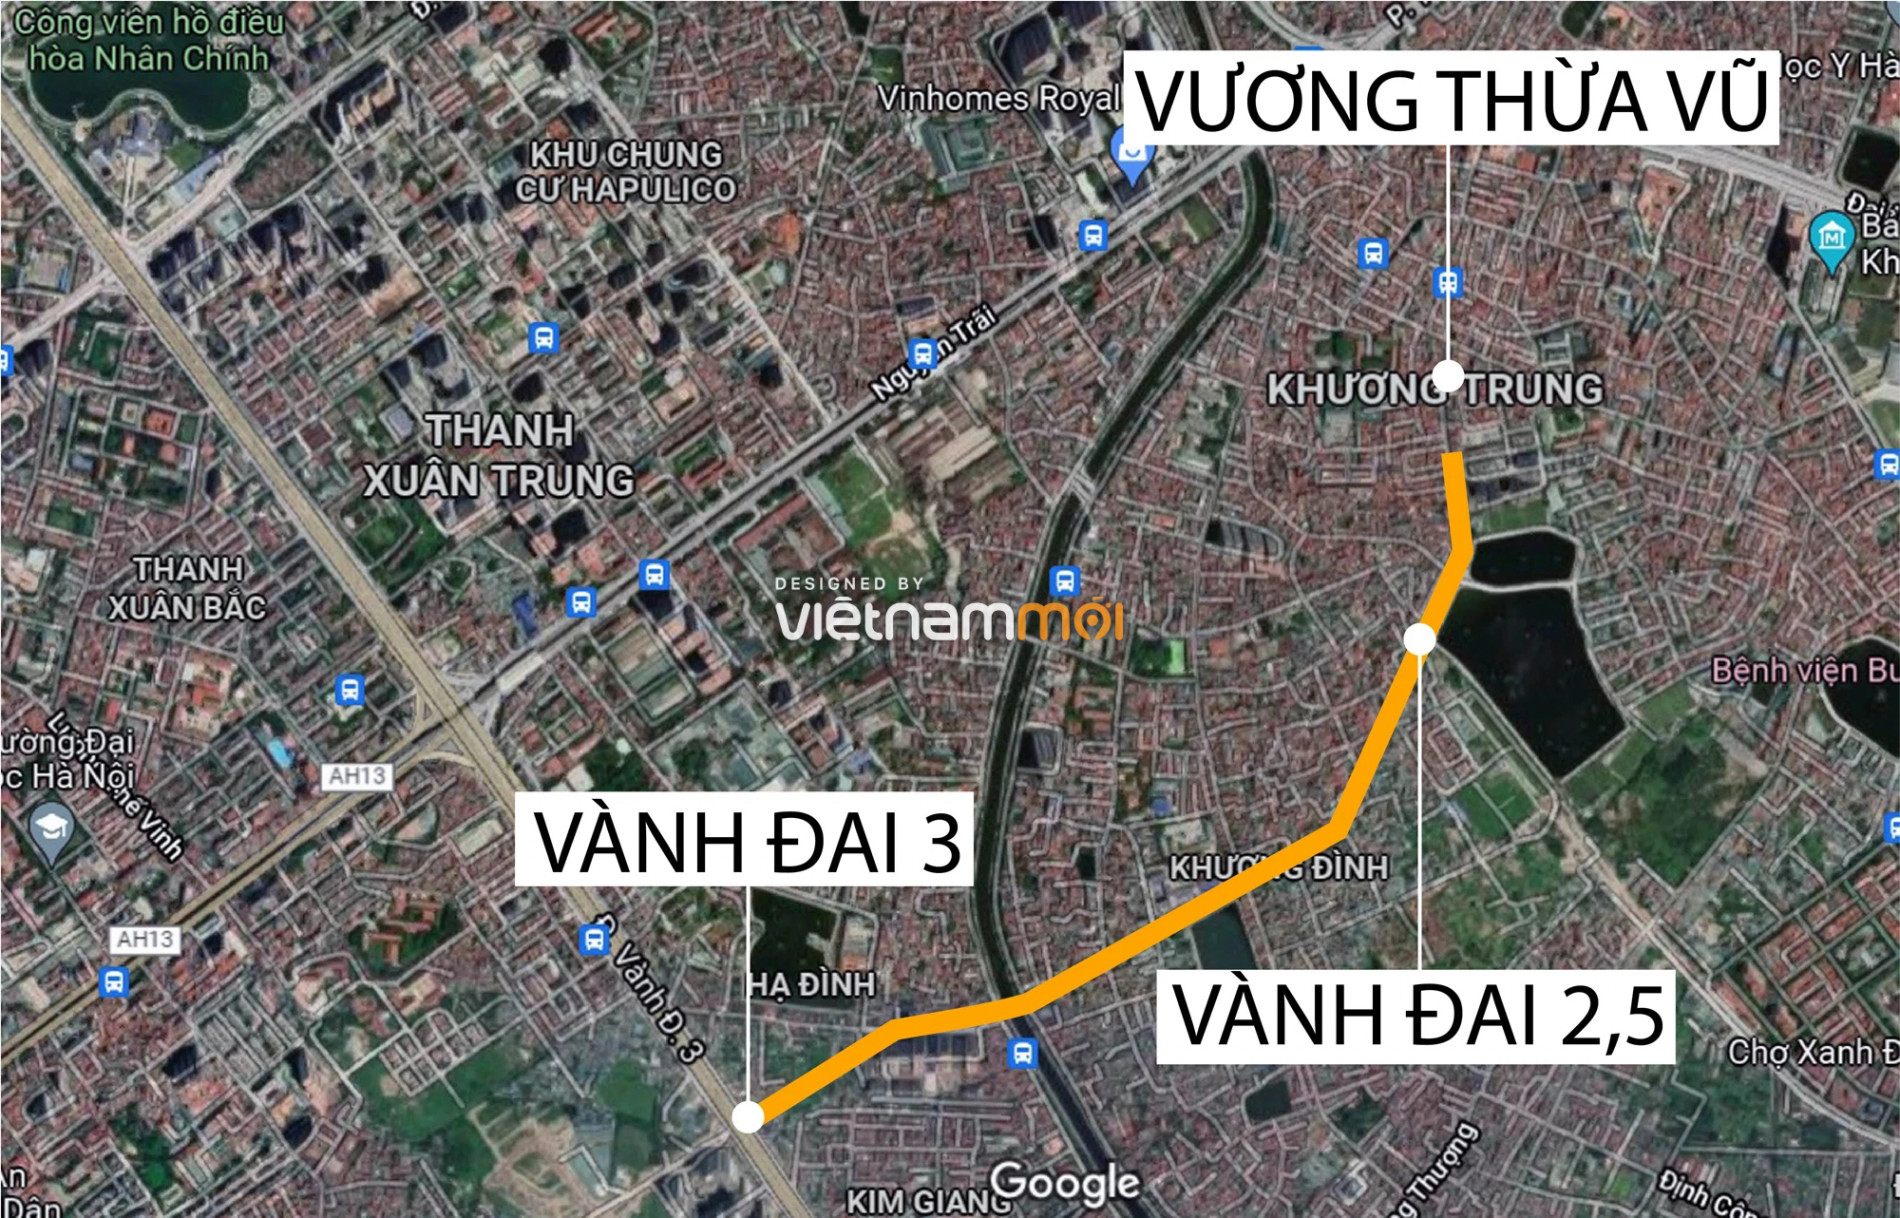 Toàn cảnh dự án đường Tôn Thất Tùng kéo dài đang được Hà Nội rà soát - Ảnh 1.